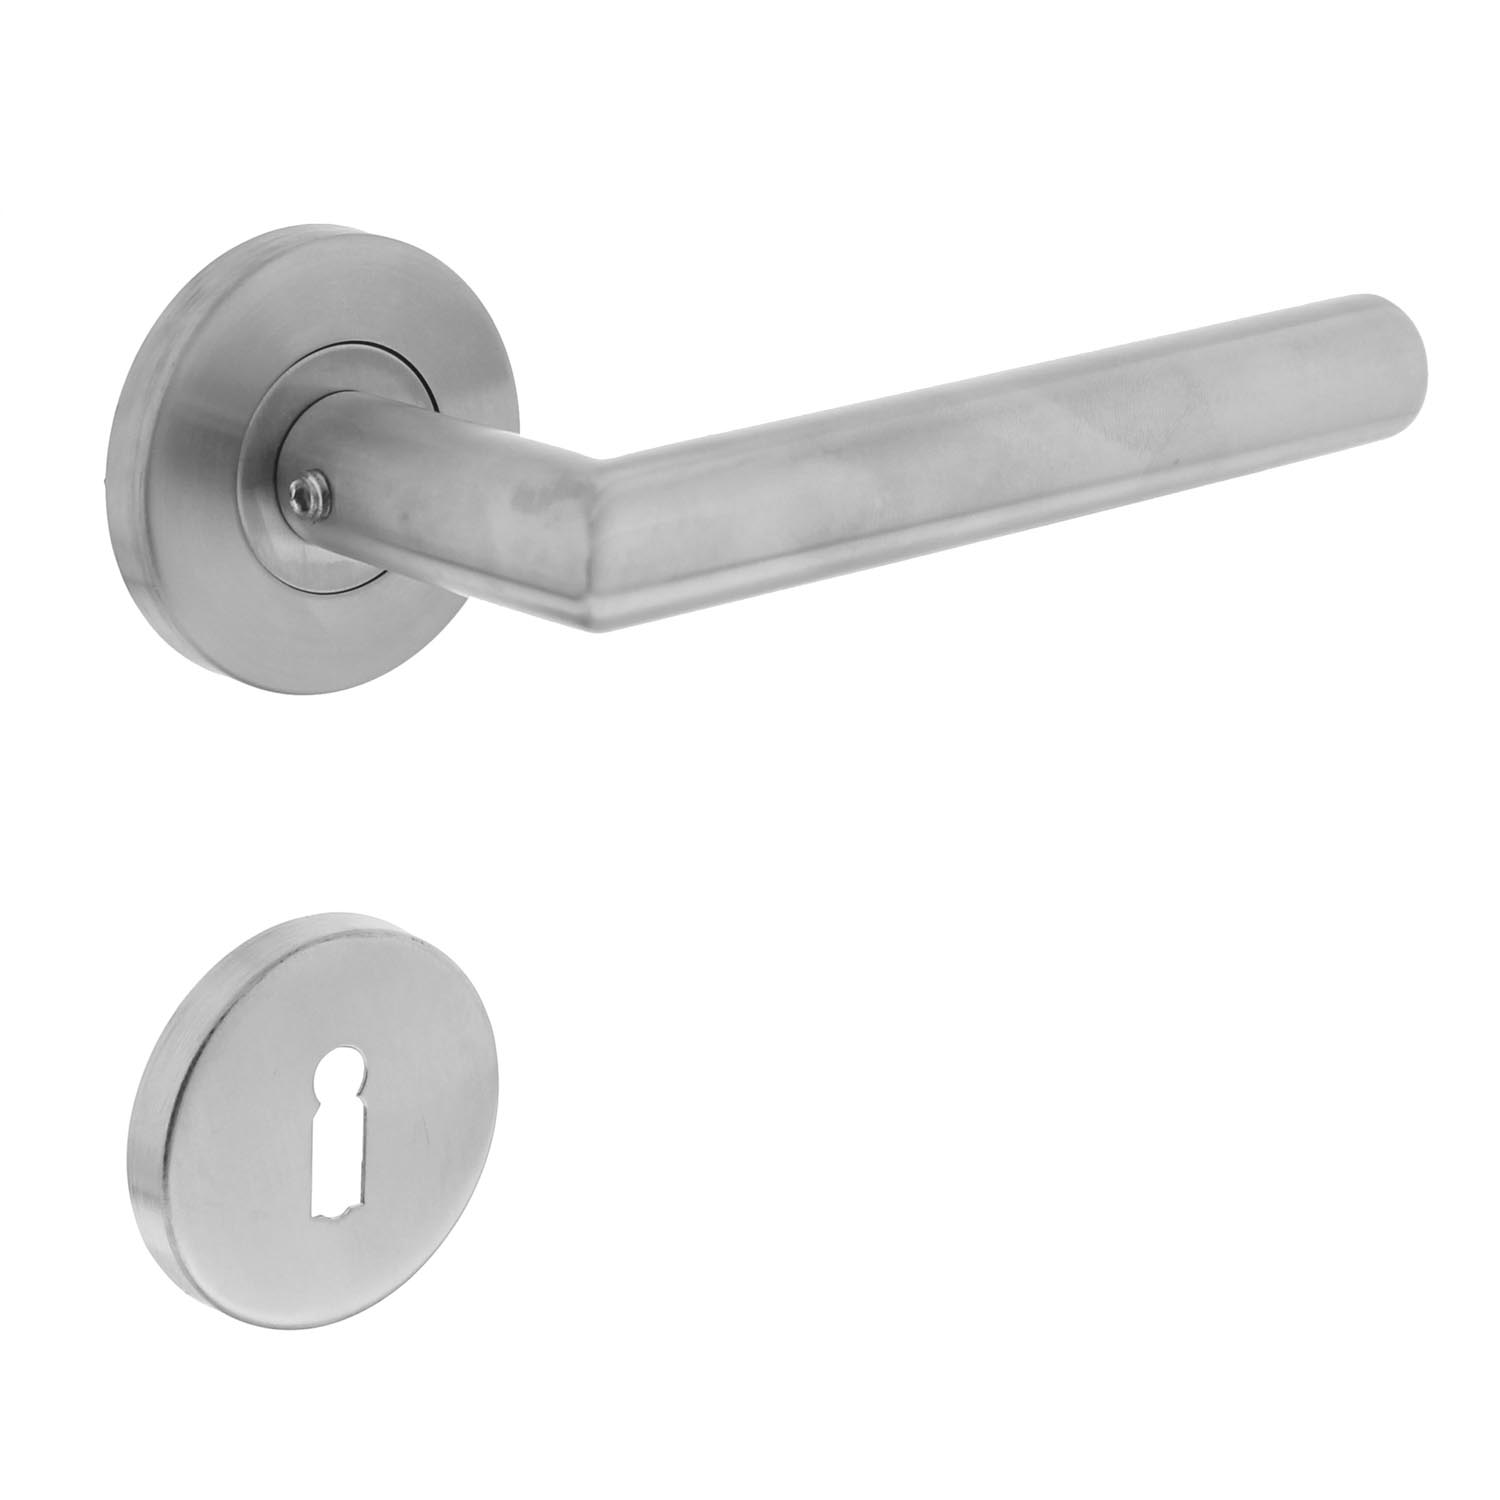 Intersteel deurbeslag - Deurkruk Hoek 90°op rozet met sleutelgat plaatjes neutraal RVS (0035.101203)